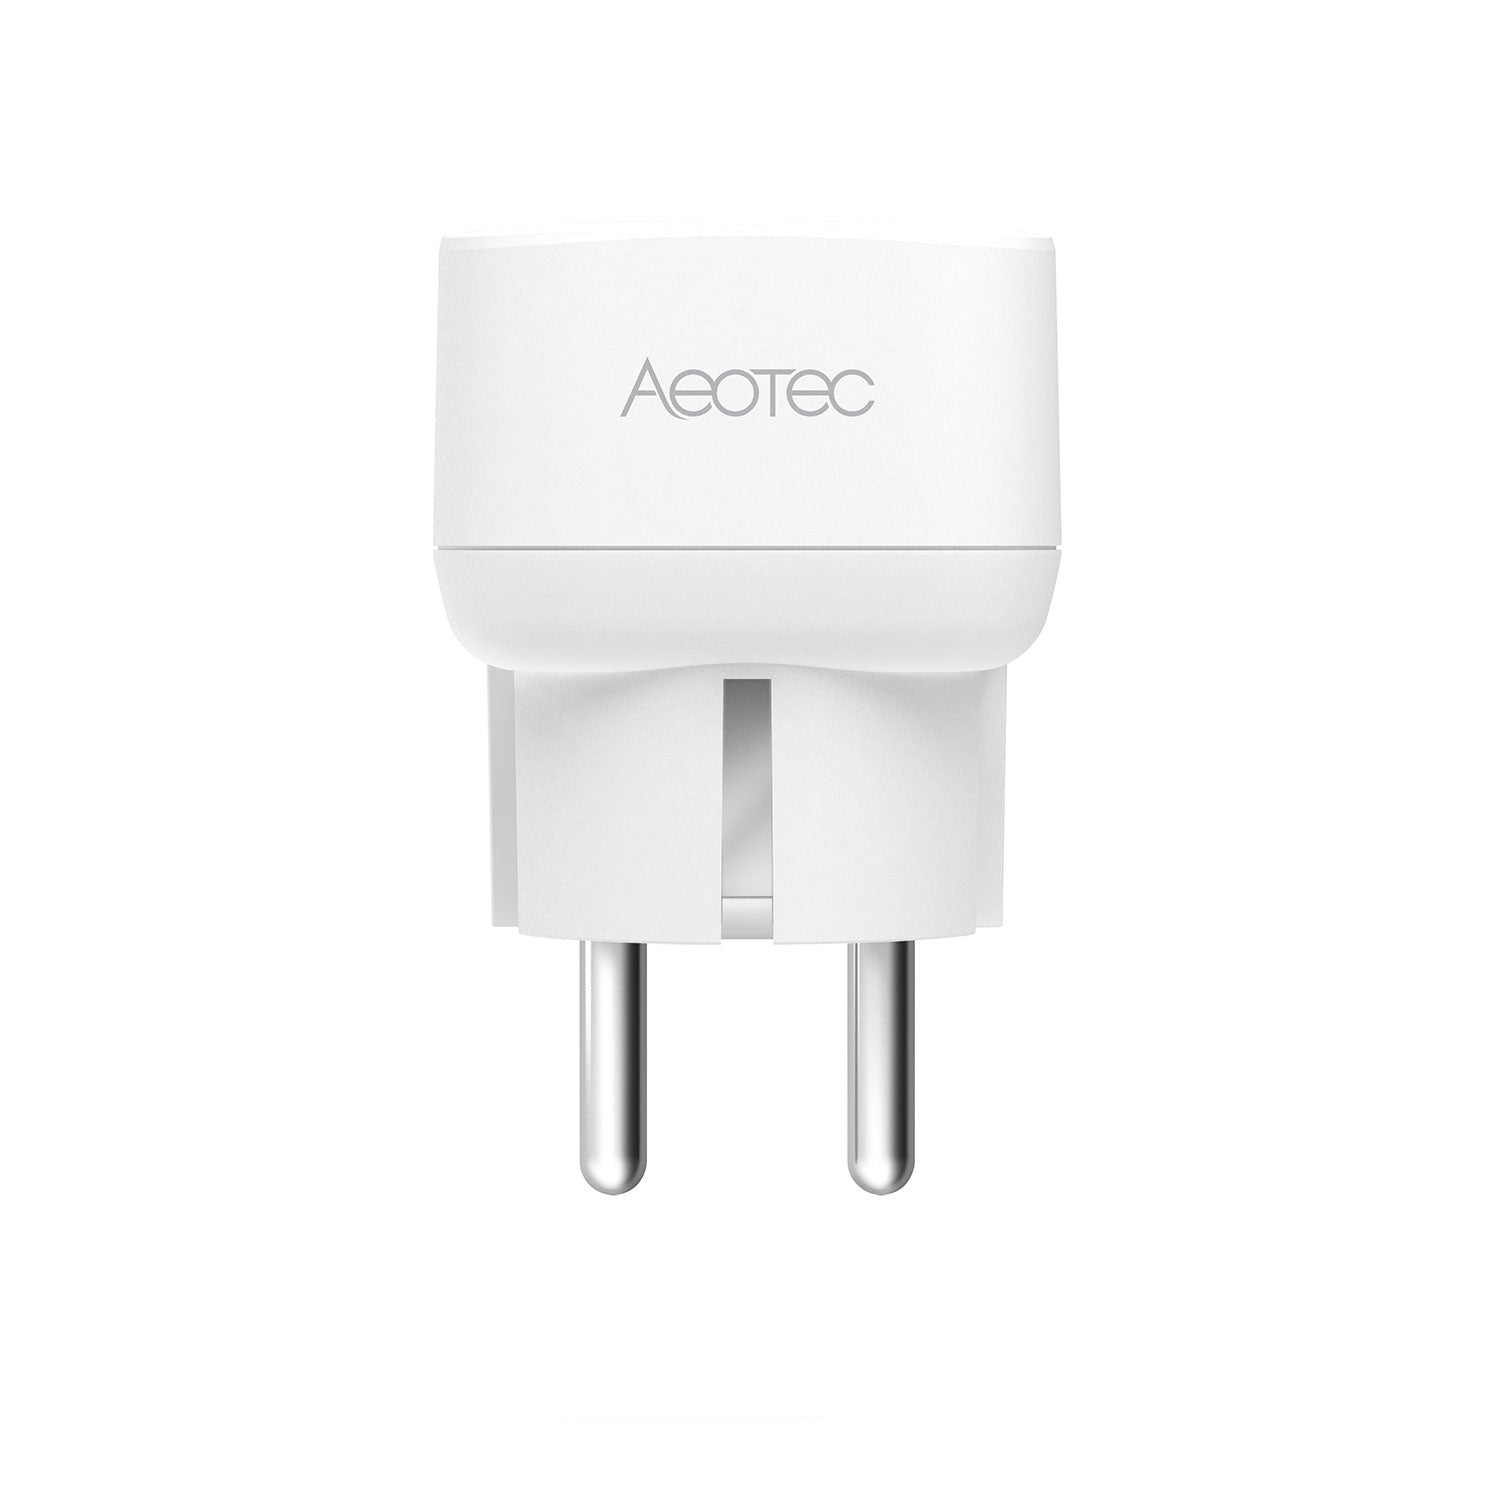 Aeotec Smart Switch 7 Zwischenstecker Seitenansicht